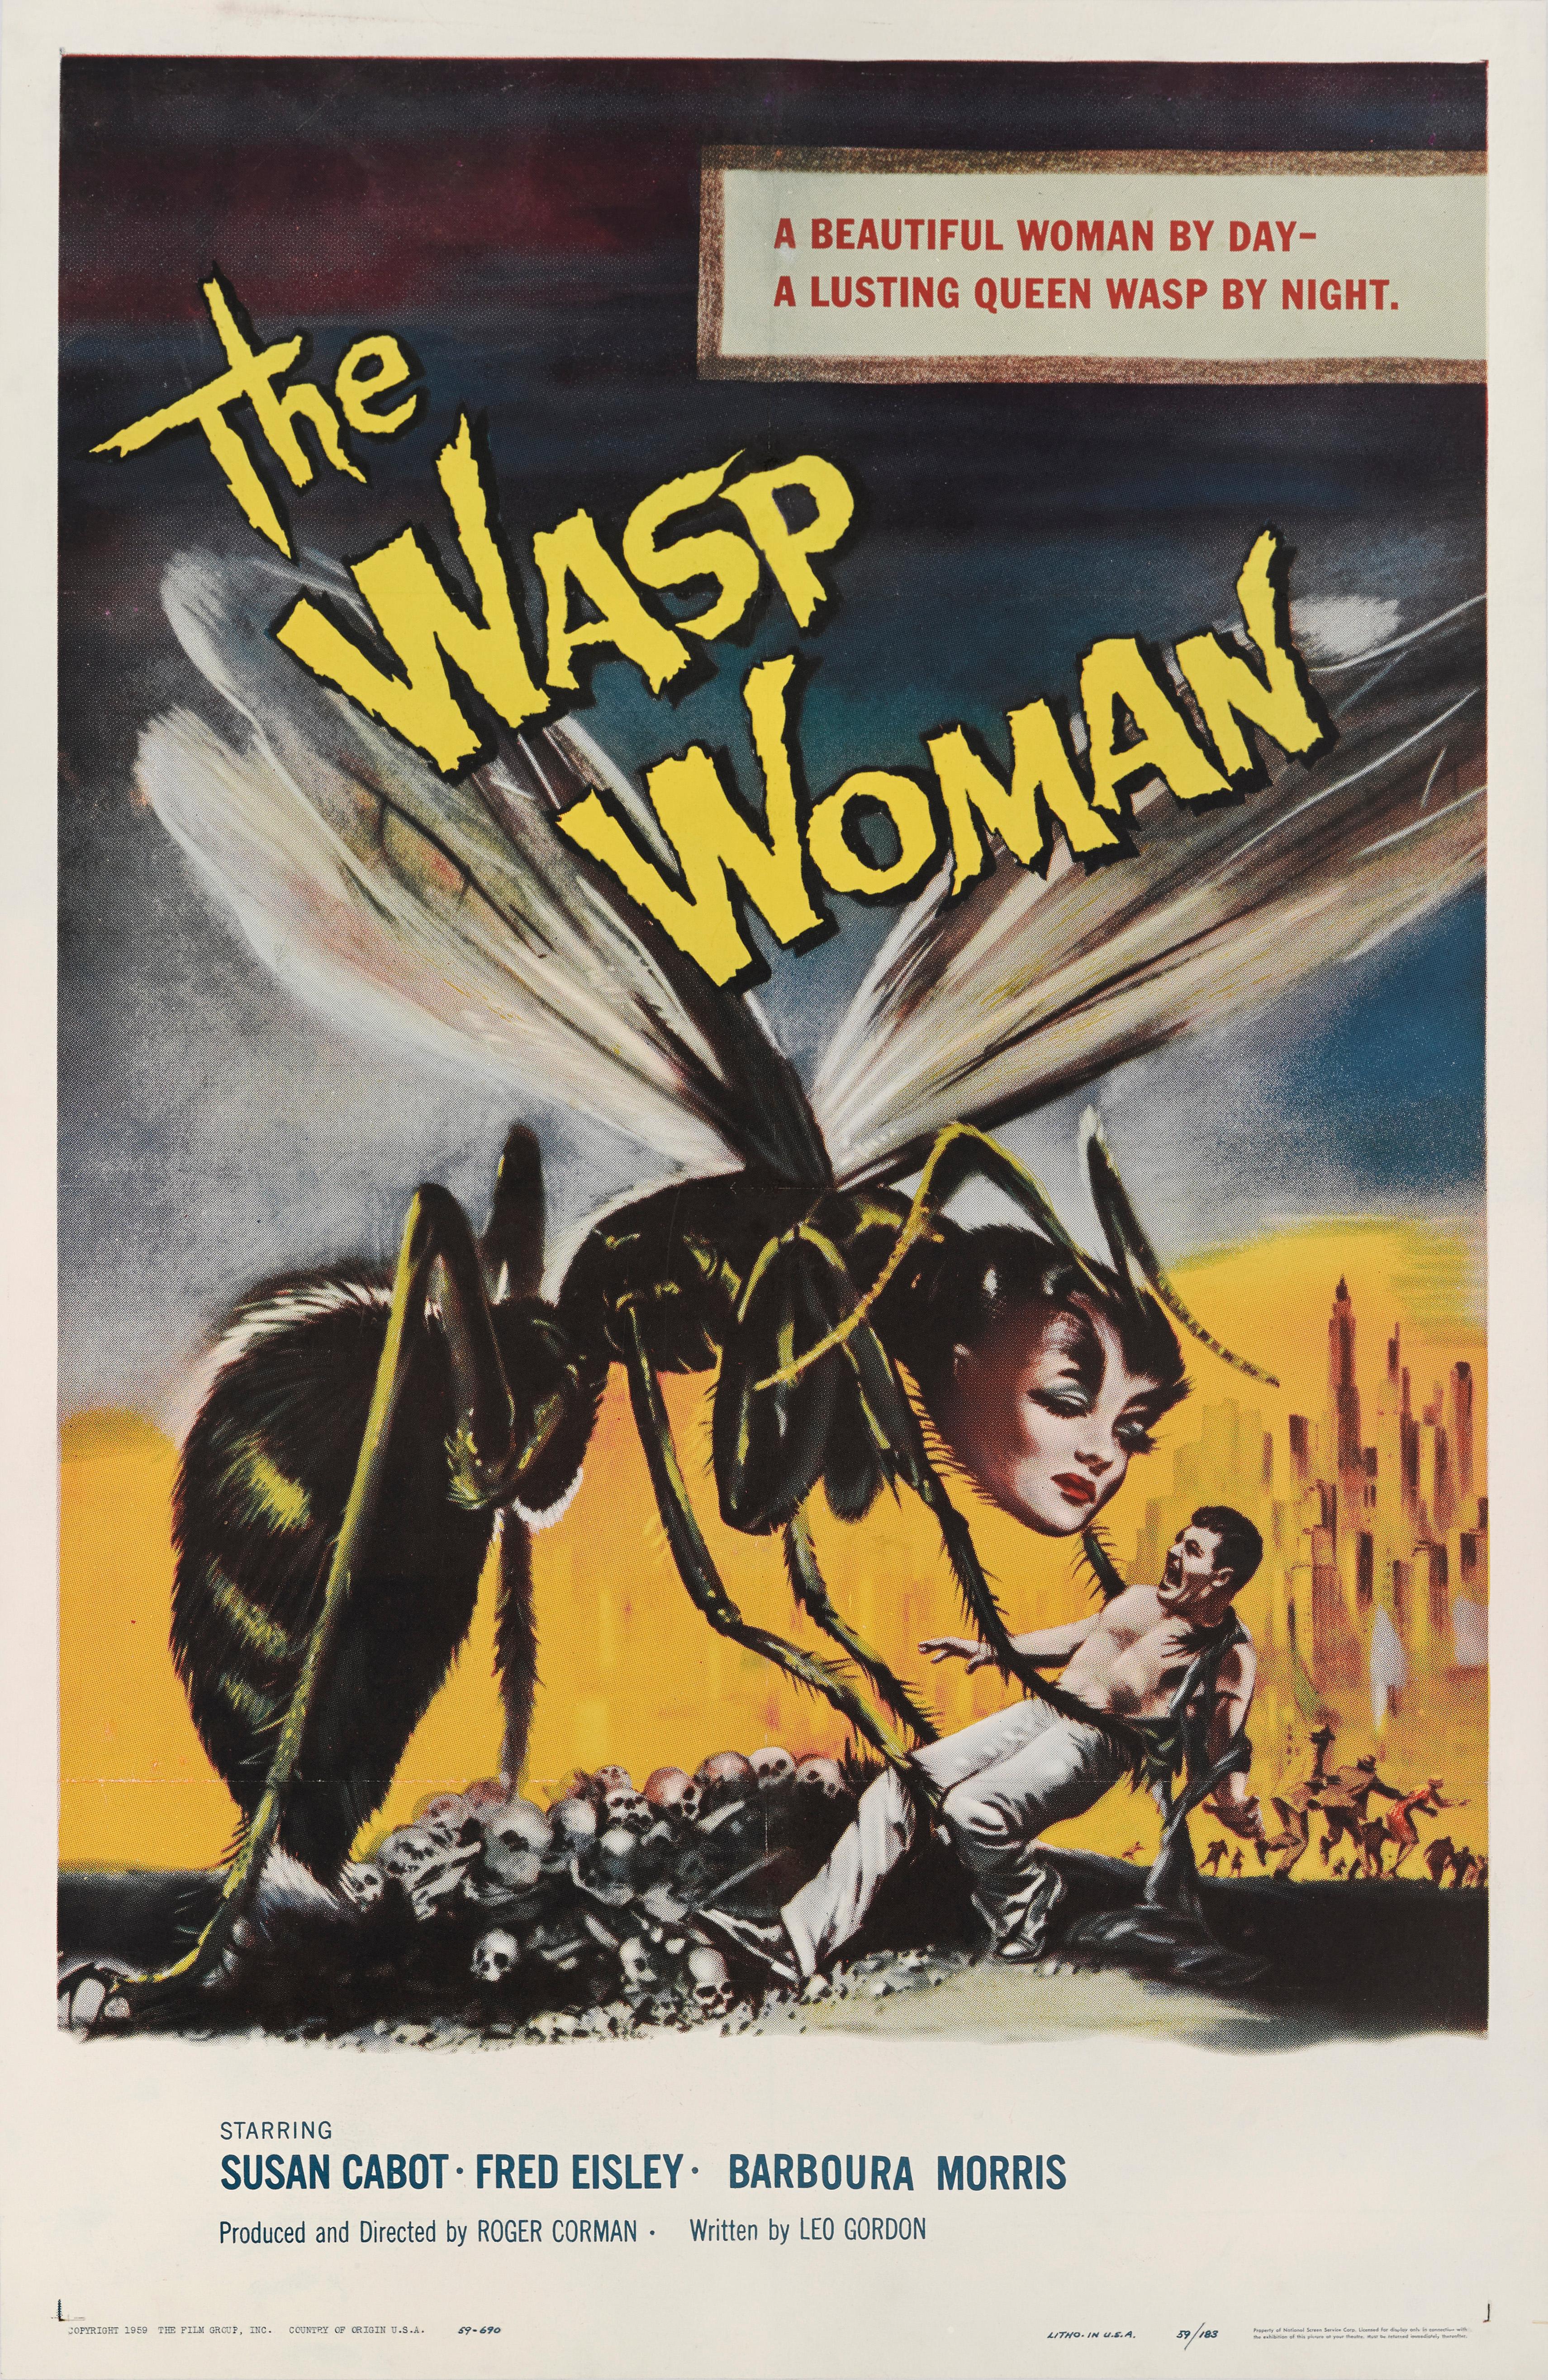 Affiche américaine originale du film d'horreur de 1959 avec Susan Cabot, Anthony Eisley et Barboura Morris. 
Le film a été réalisé par Roger Corman.
Ce poster est doublé d'une toile de conservation et il est expédié enroulé dans un tube solide.